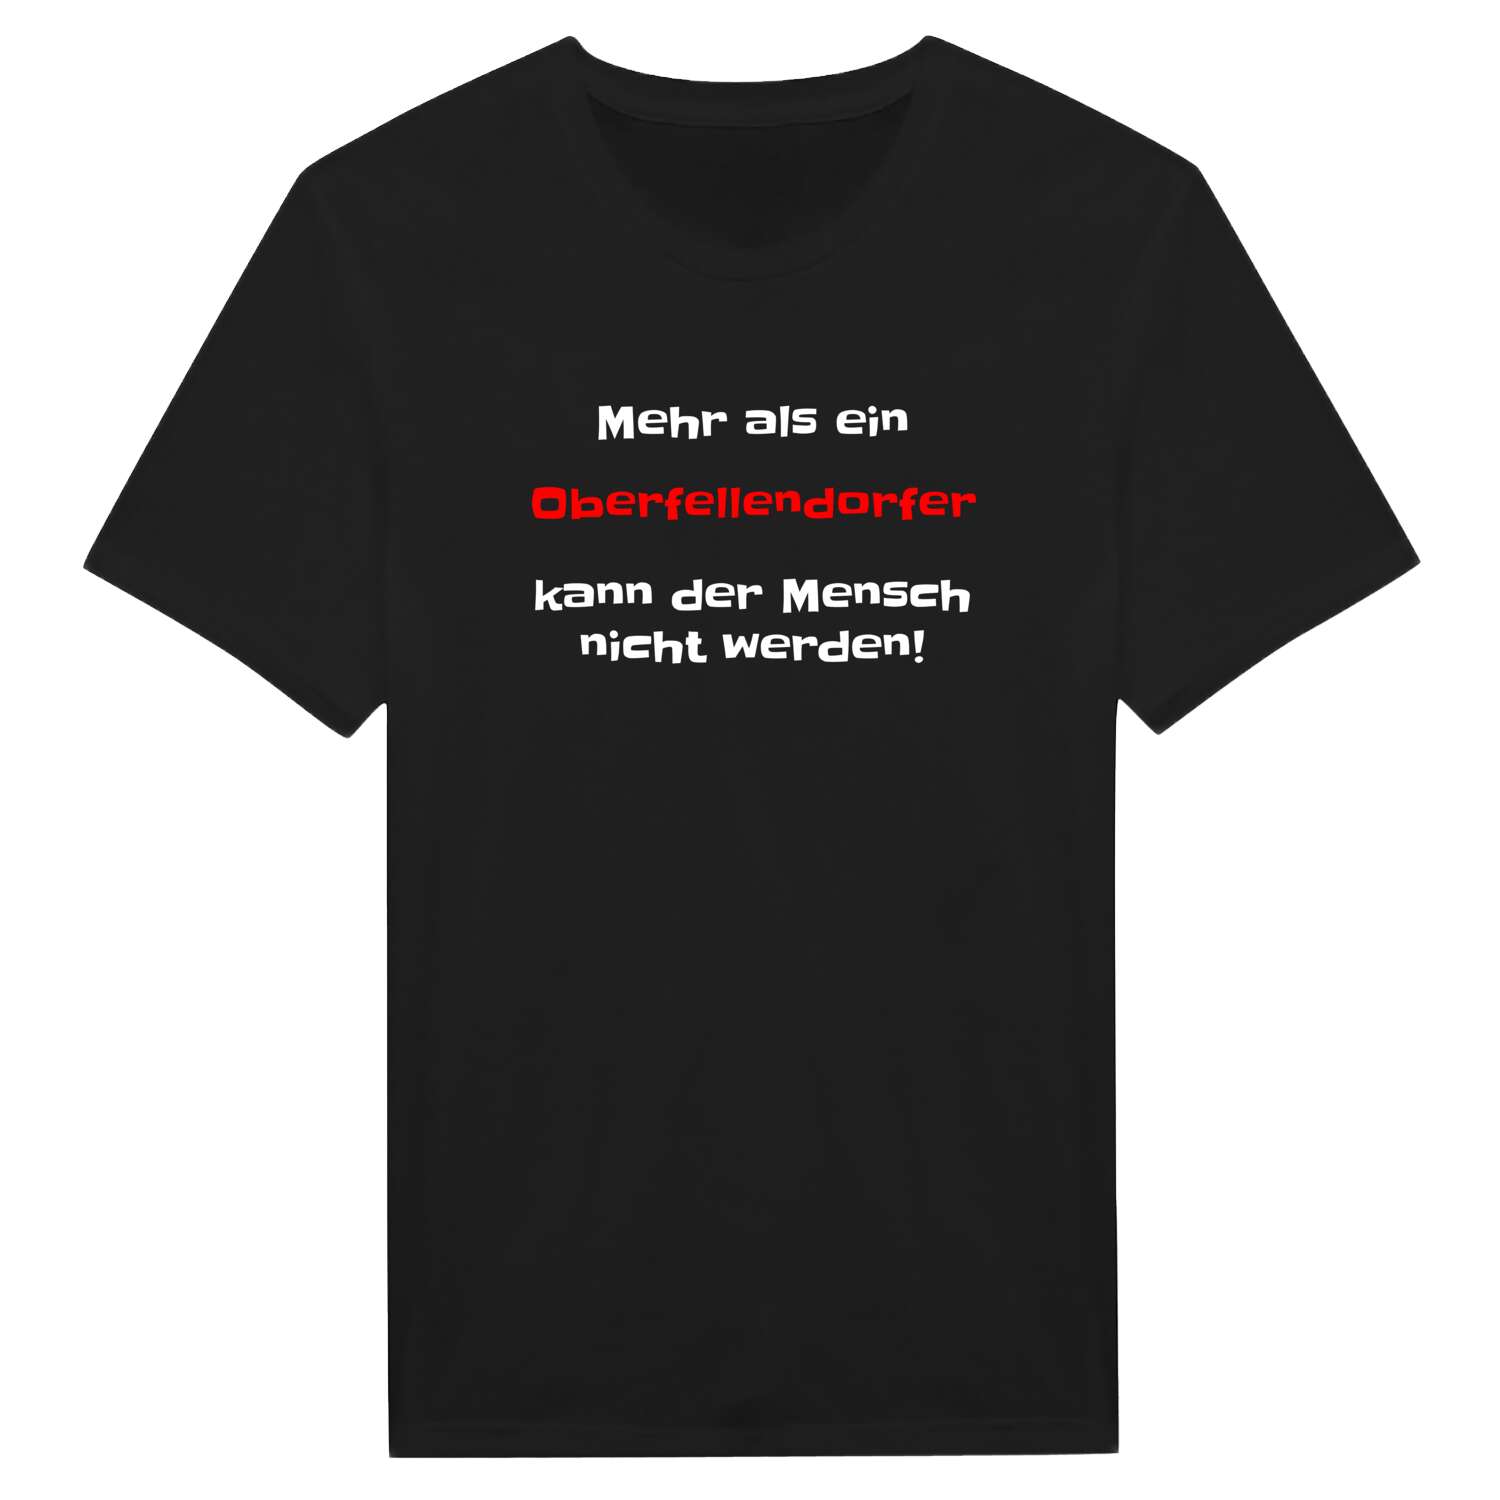 Oberfellendorf T-Shirt »Mehr als ein«